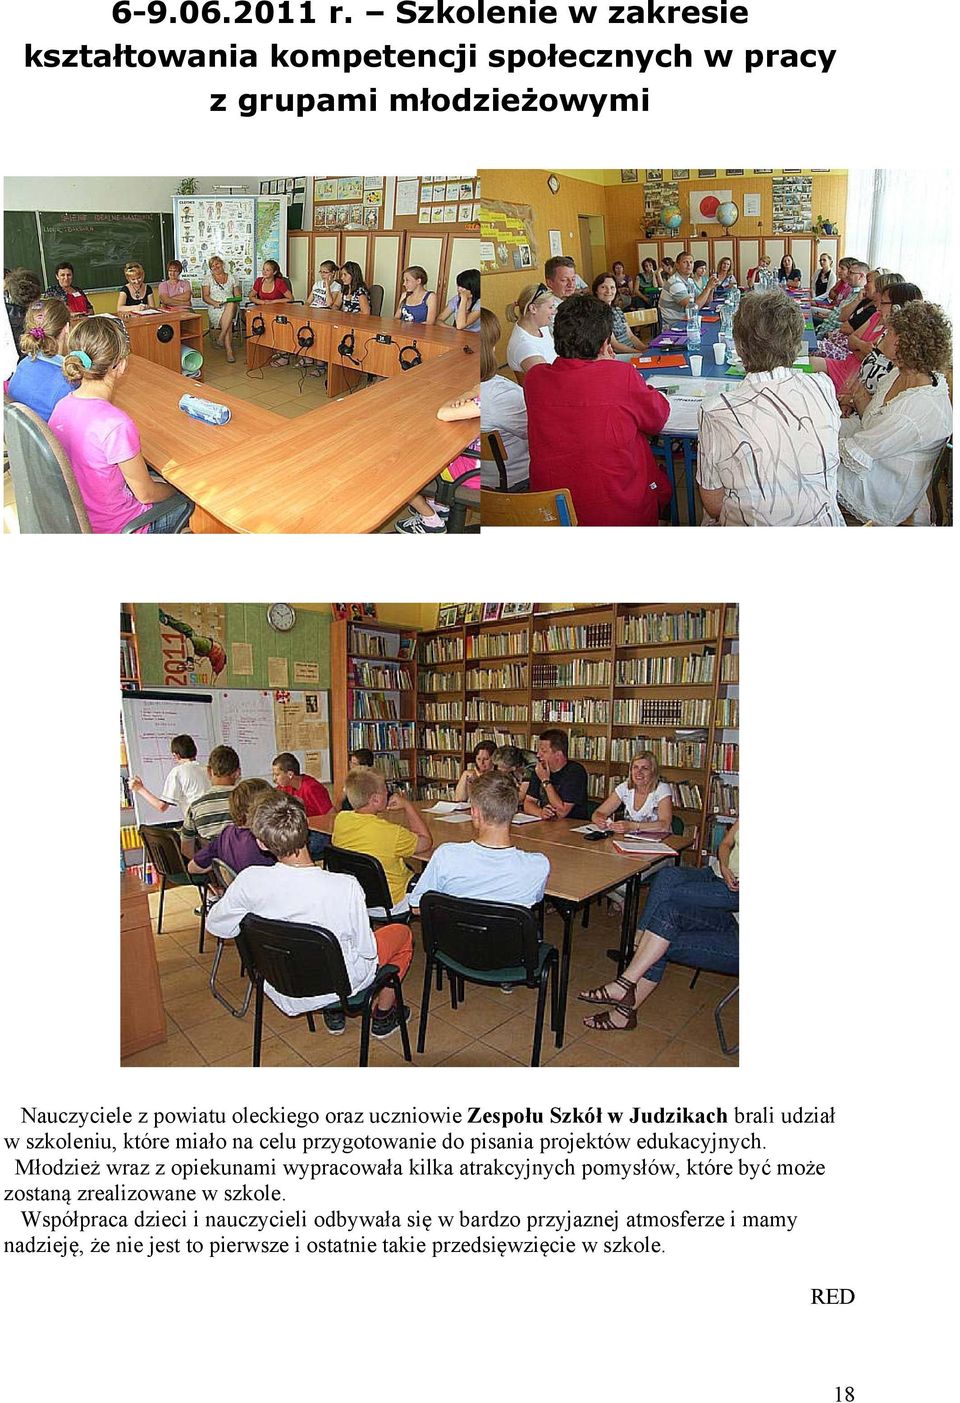 Zespołu Szkół w Judzikach brali udział w szkoleniu, które miało na celu przygotowanie do pisania projektów edukacyjnych.